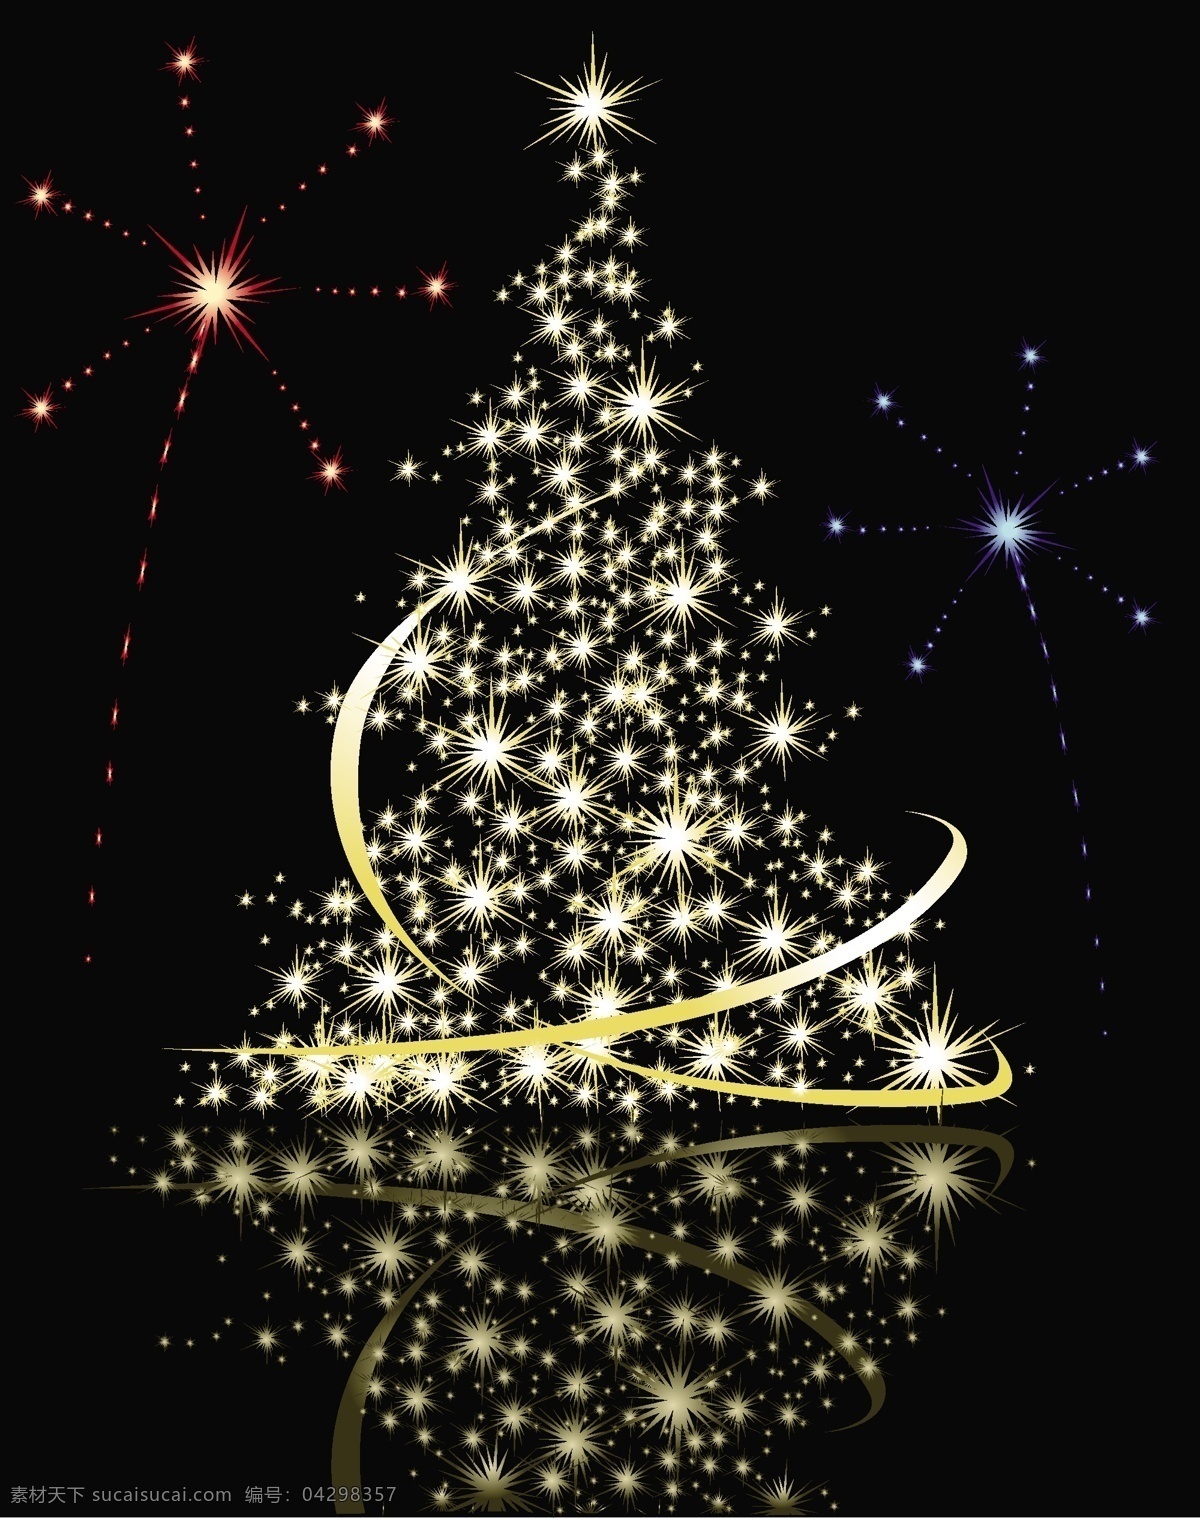 矢量 璀璨 绚丽 星光 圣诞树 花纹 星星 雪花 矢量素材